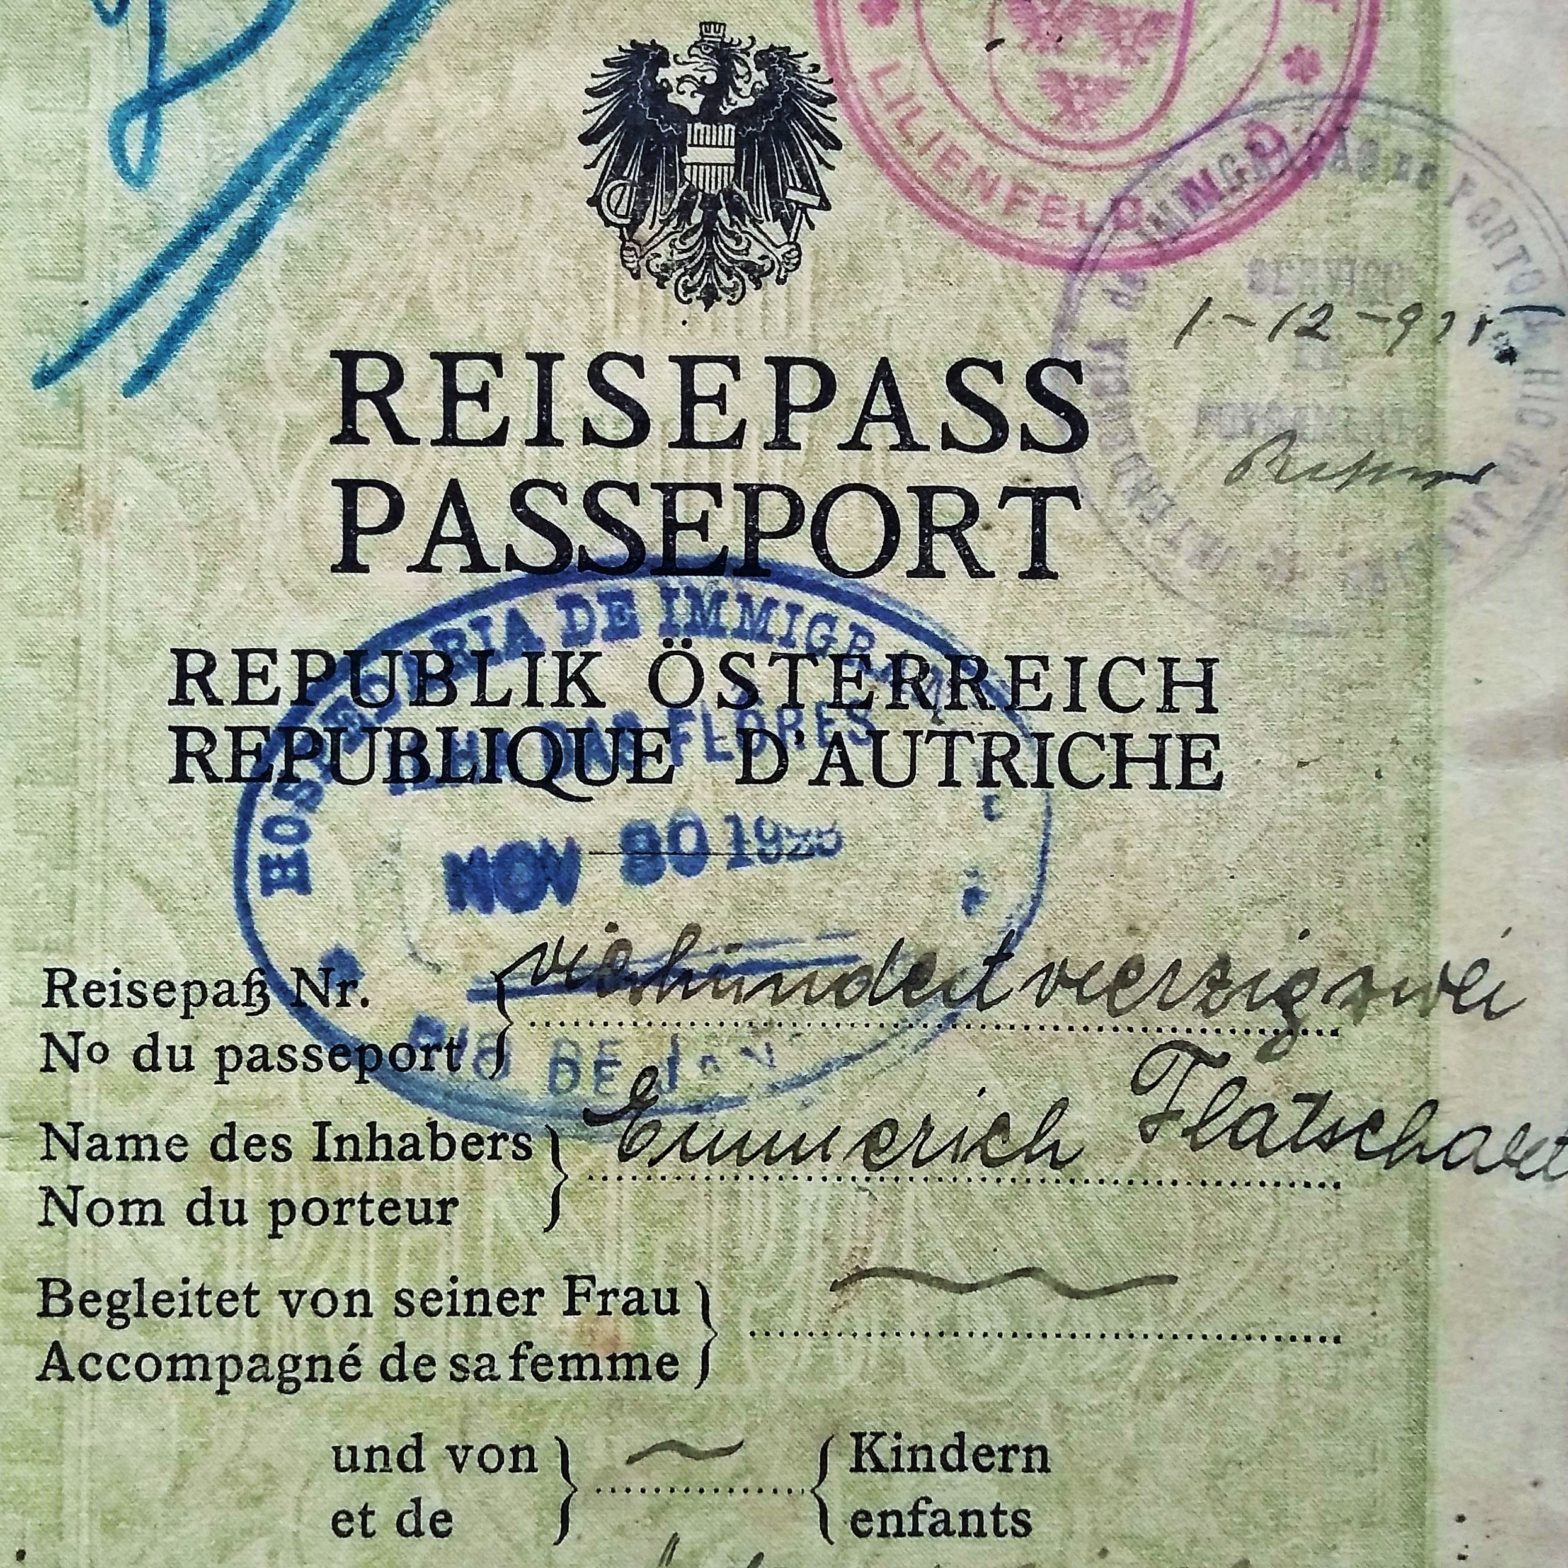 Emmerich Flatschart - Reisepass, 1925